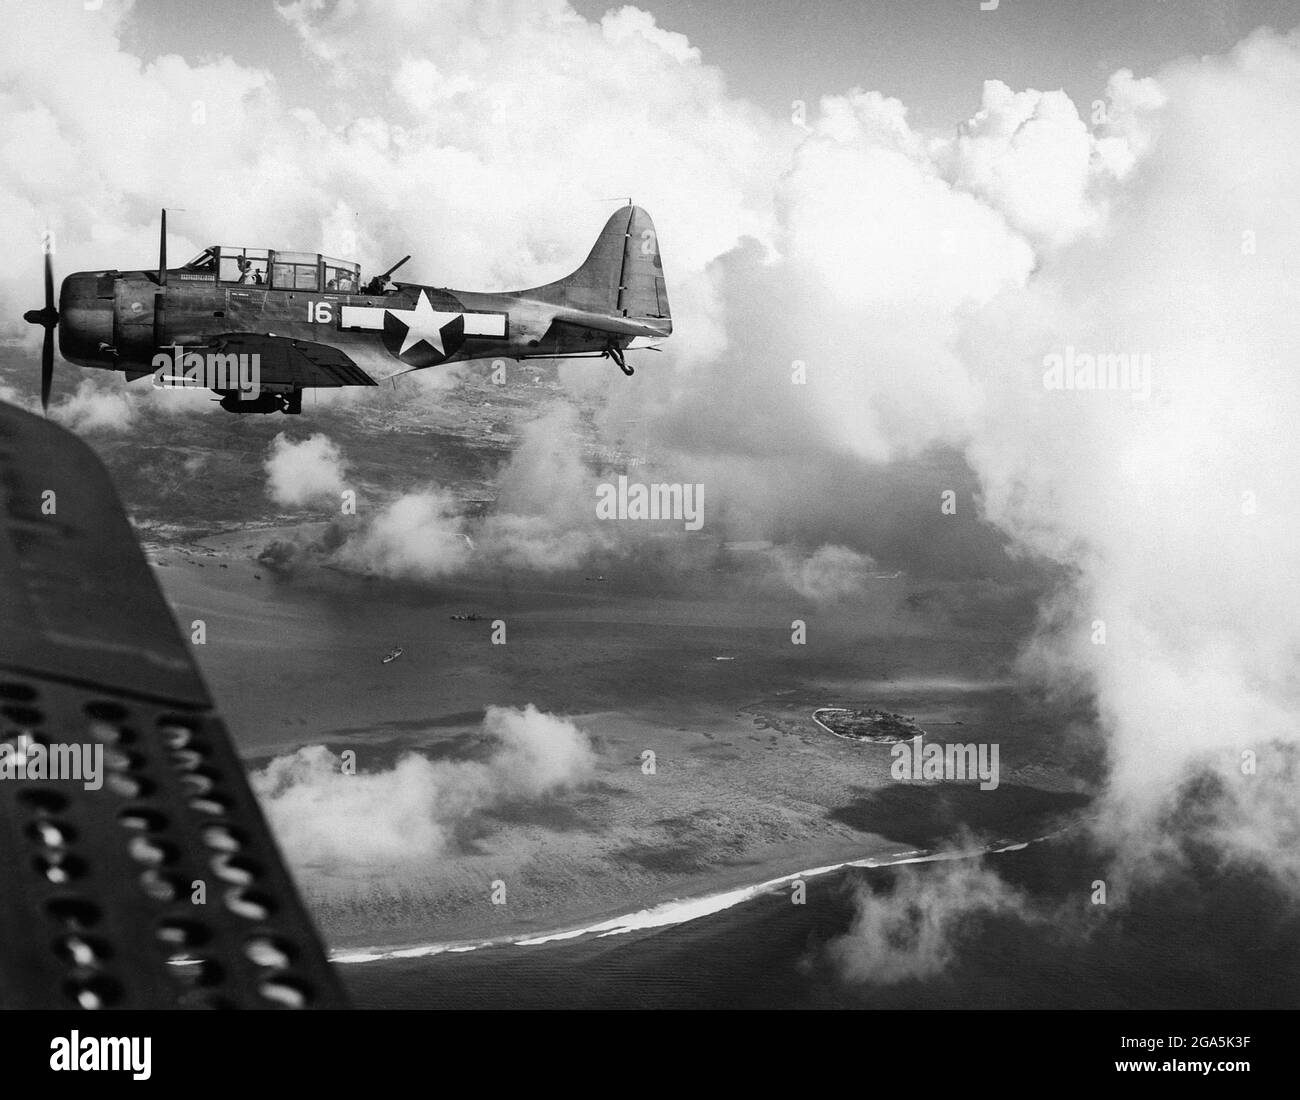 Guerre du Pacifique : un bombardier américain Douglas SBD Dauntless survole l'île de Saipan le 15 juin 1944. La bataille de Saipan (du 15 juin au 9 juillet 1944) était une bataille clé du Pacifique pendant la Seconde Guerre mondiale, menée entre les forces armées des États-Unis et du Japon. Banque D'Images